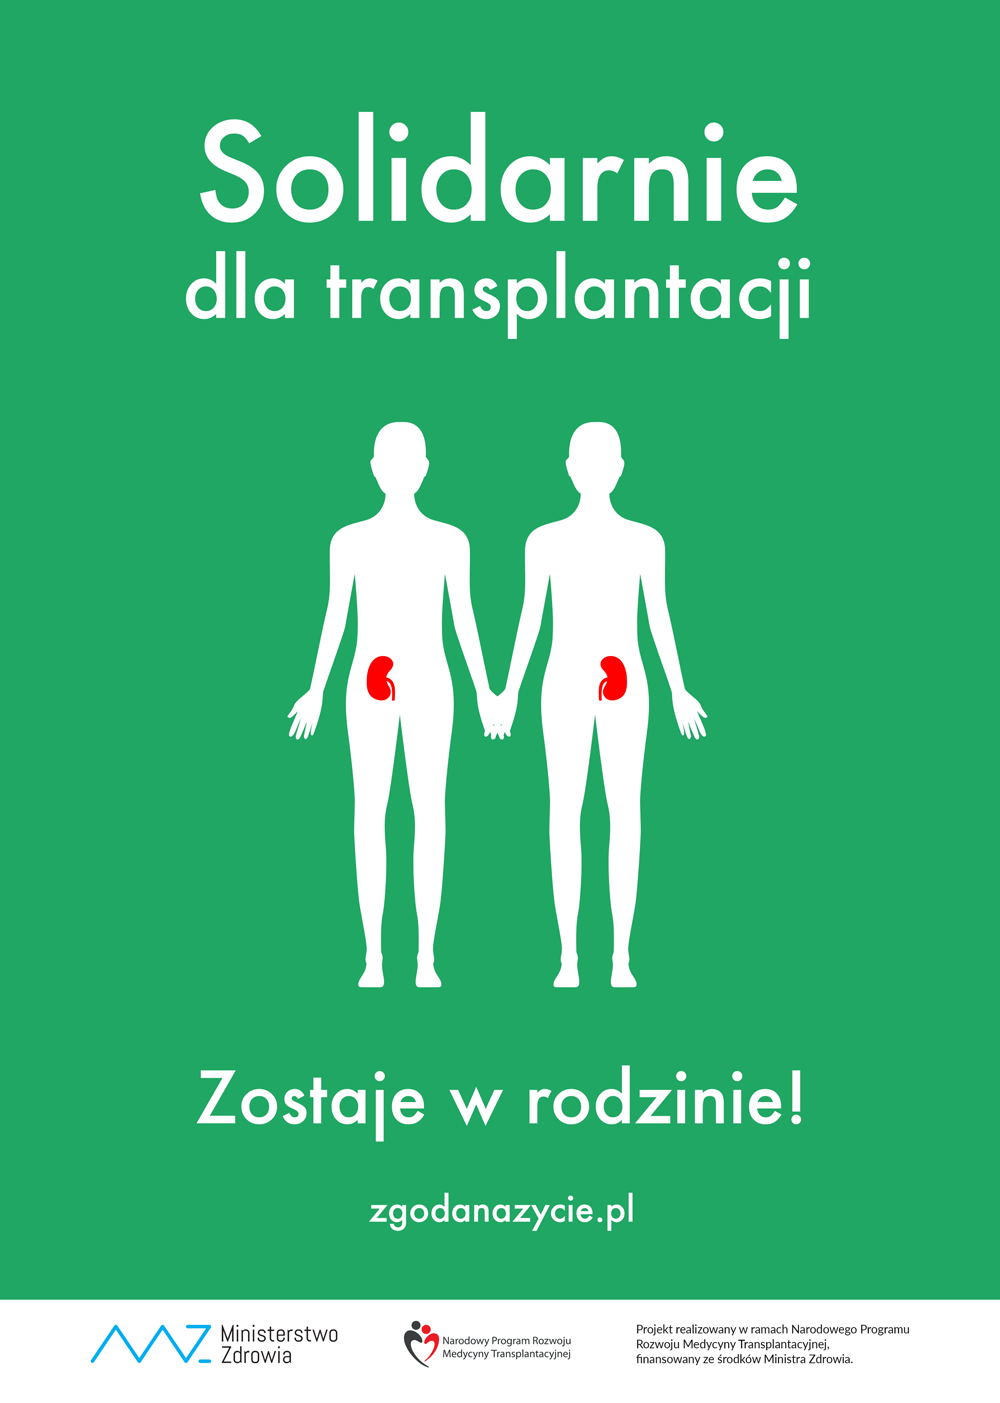 plakat kampanii Solidarnie dla transplantacji; przeszczep rodzinny; zostaje w rodzinie